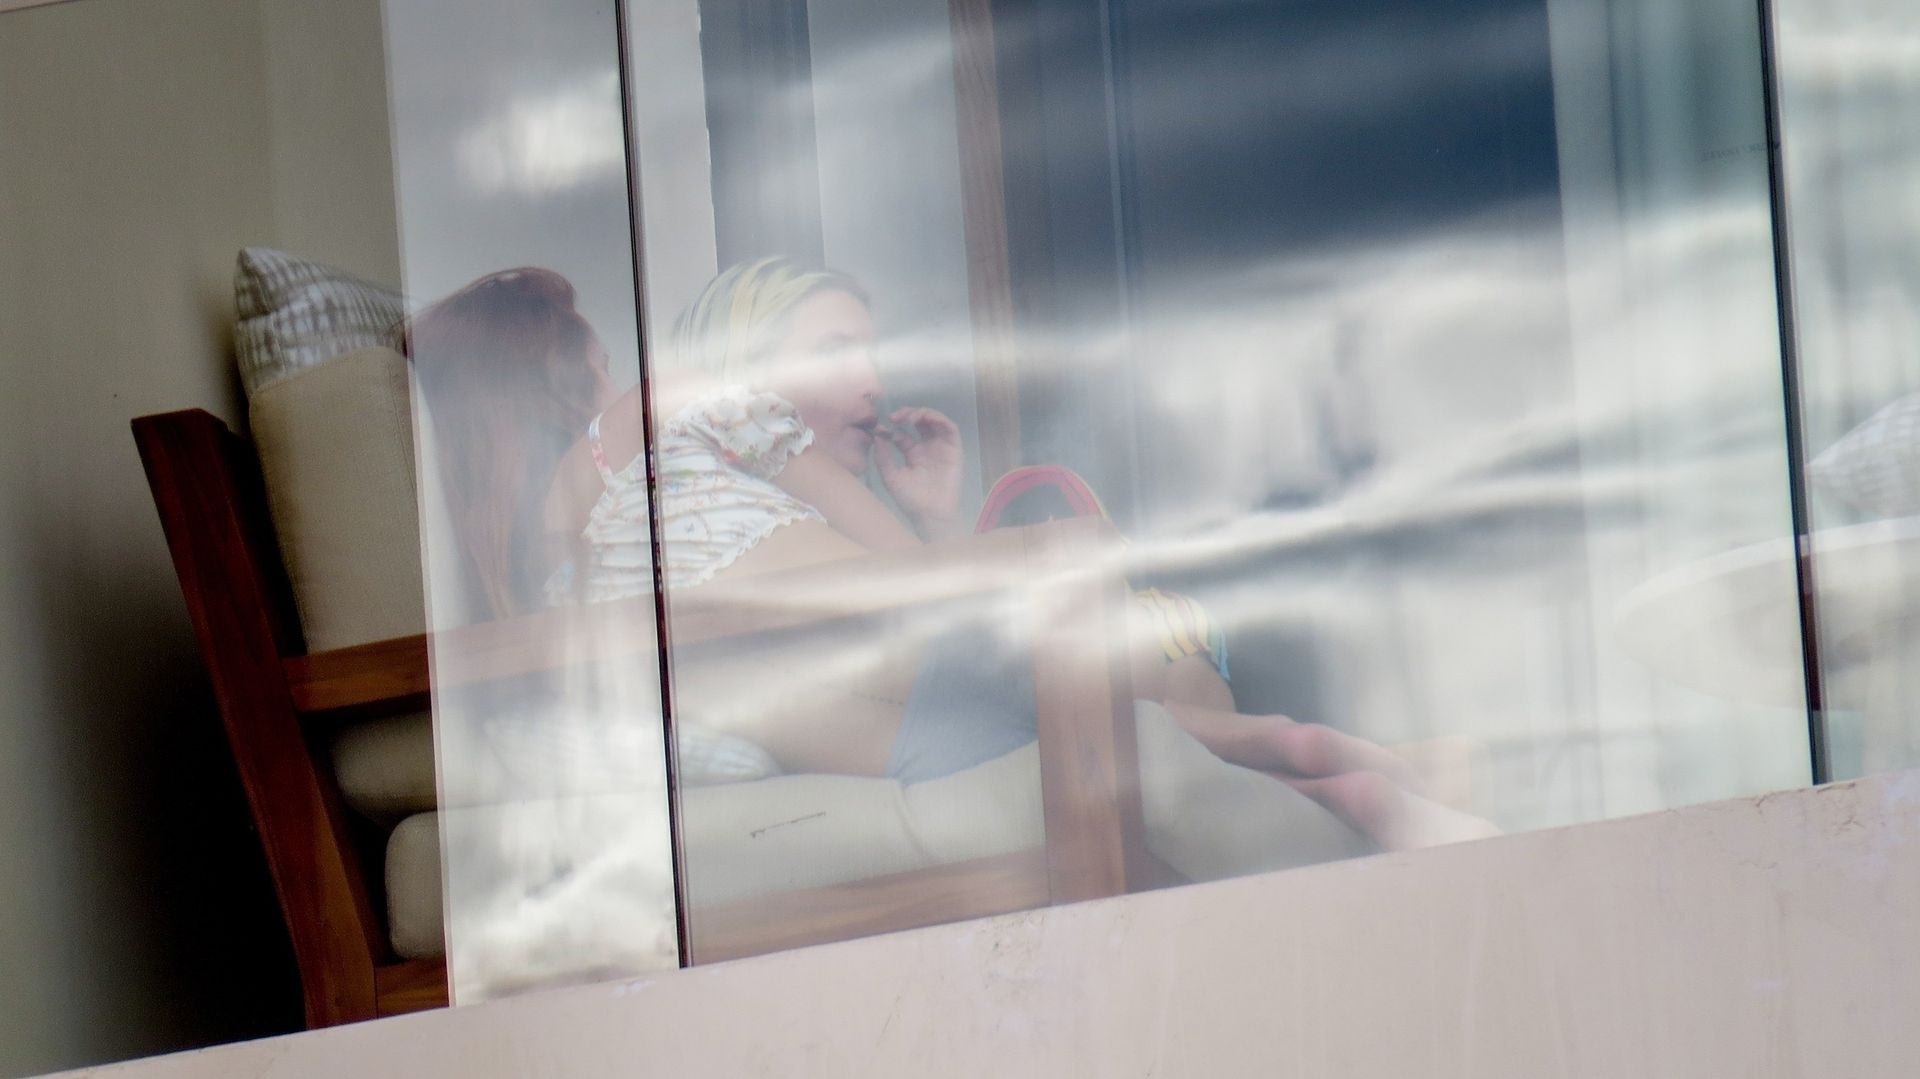 Bella Thorne & Benjamin Mascolo Relax on Their Hotel Balcony in Cabo San Lucas (28 Photos)